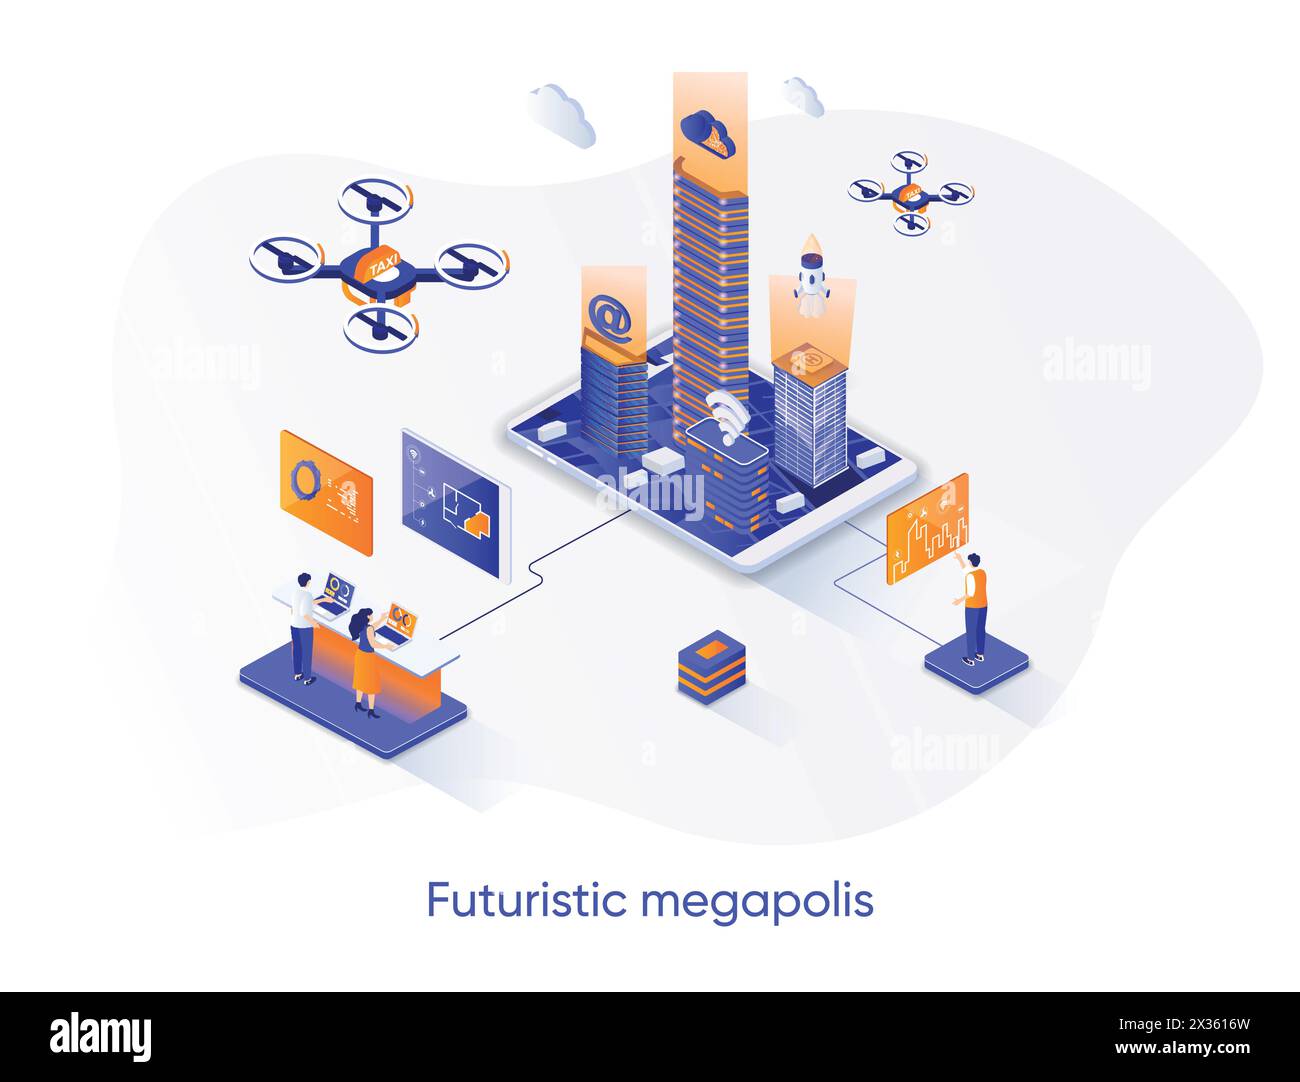 Futuristisches isometrisches Webbanner der Megapolis. Smart City, urban hitech Solution Isometry Konzept. Moderne Architektur und digitale Technologien 3D Szene d Stock Vektor